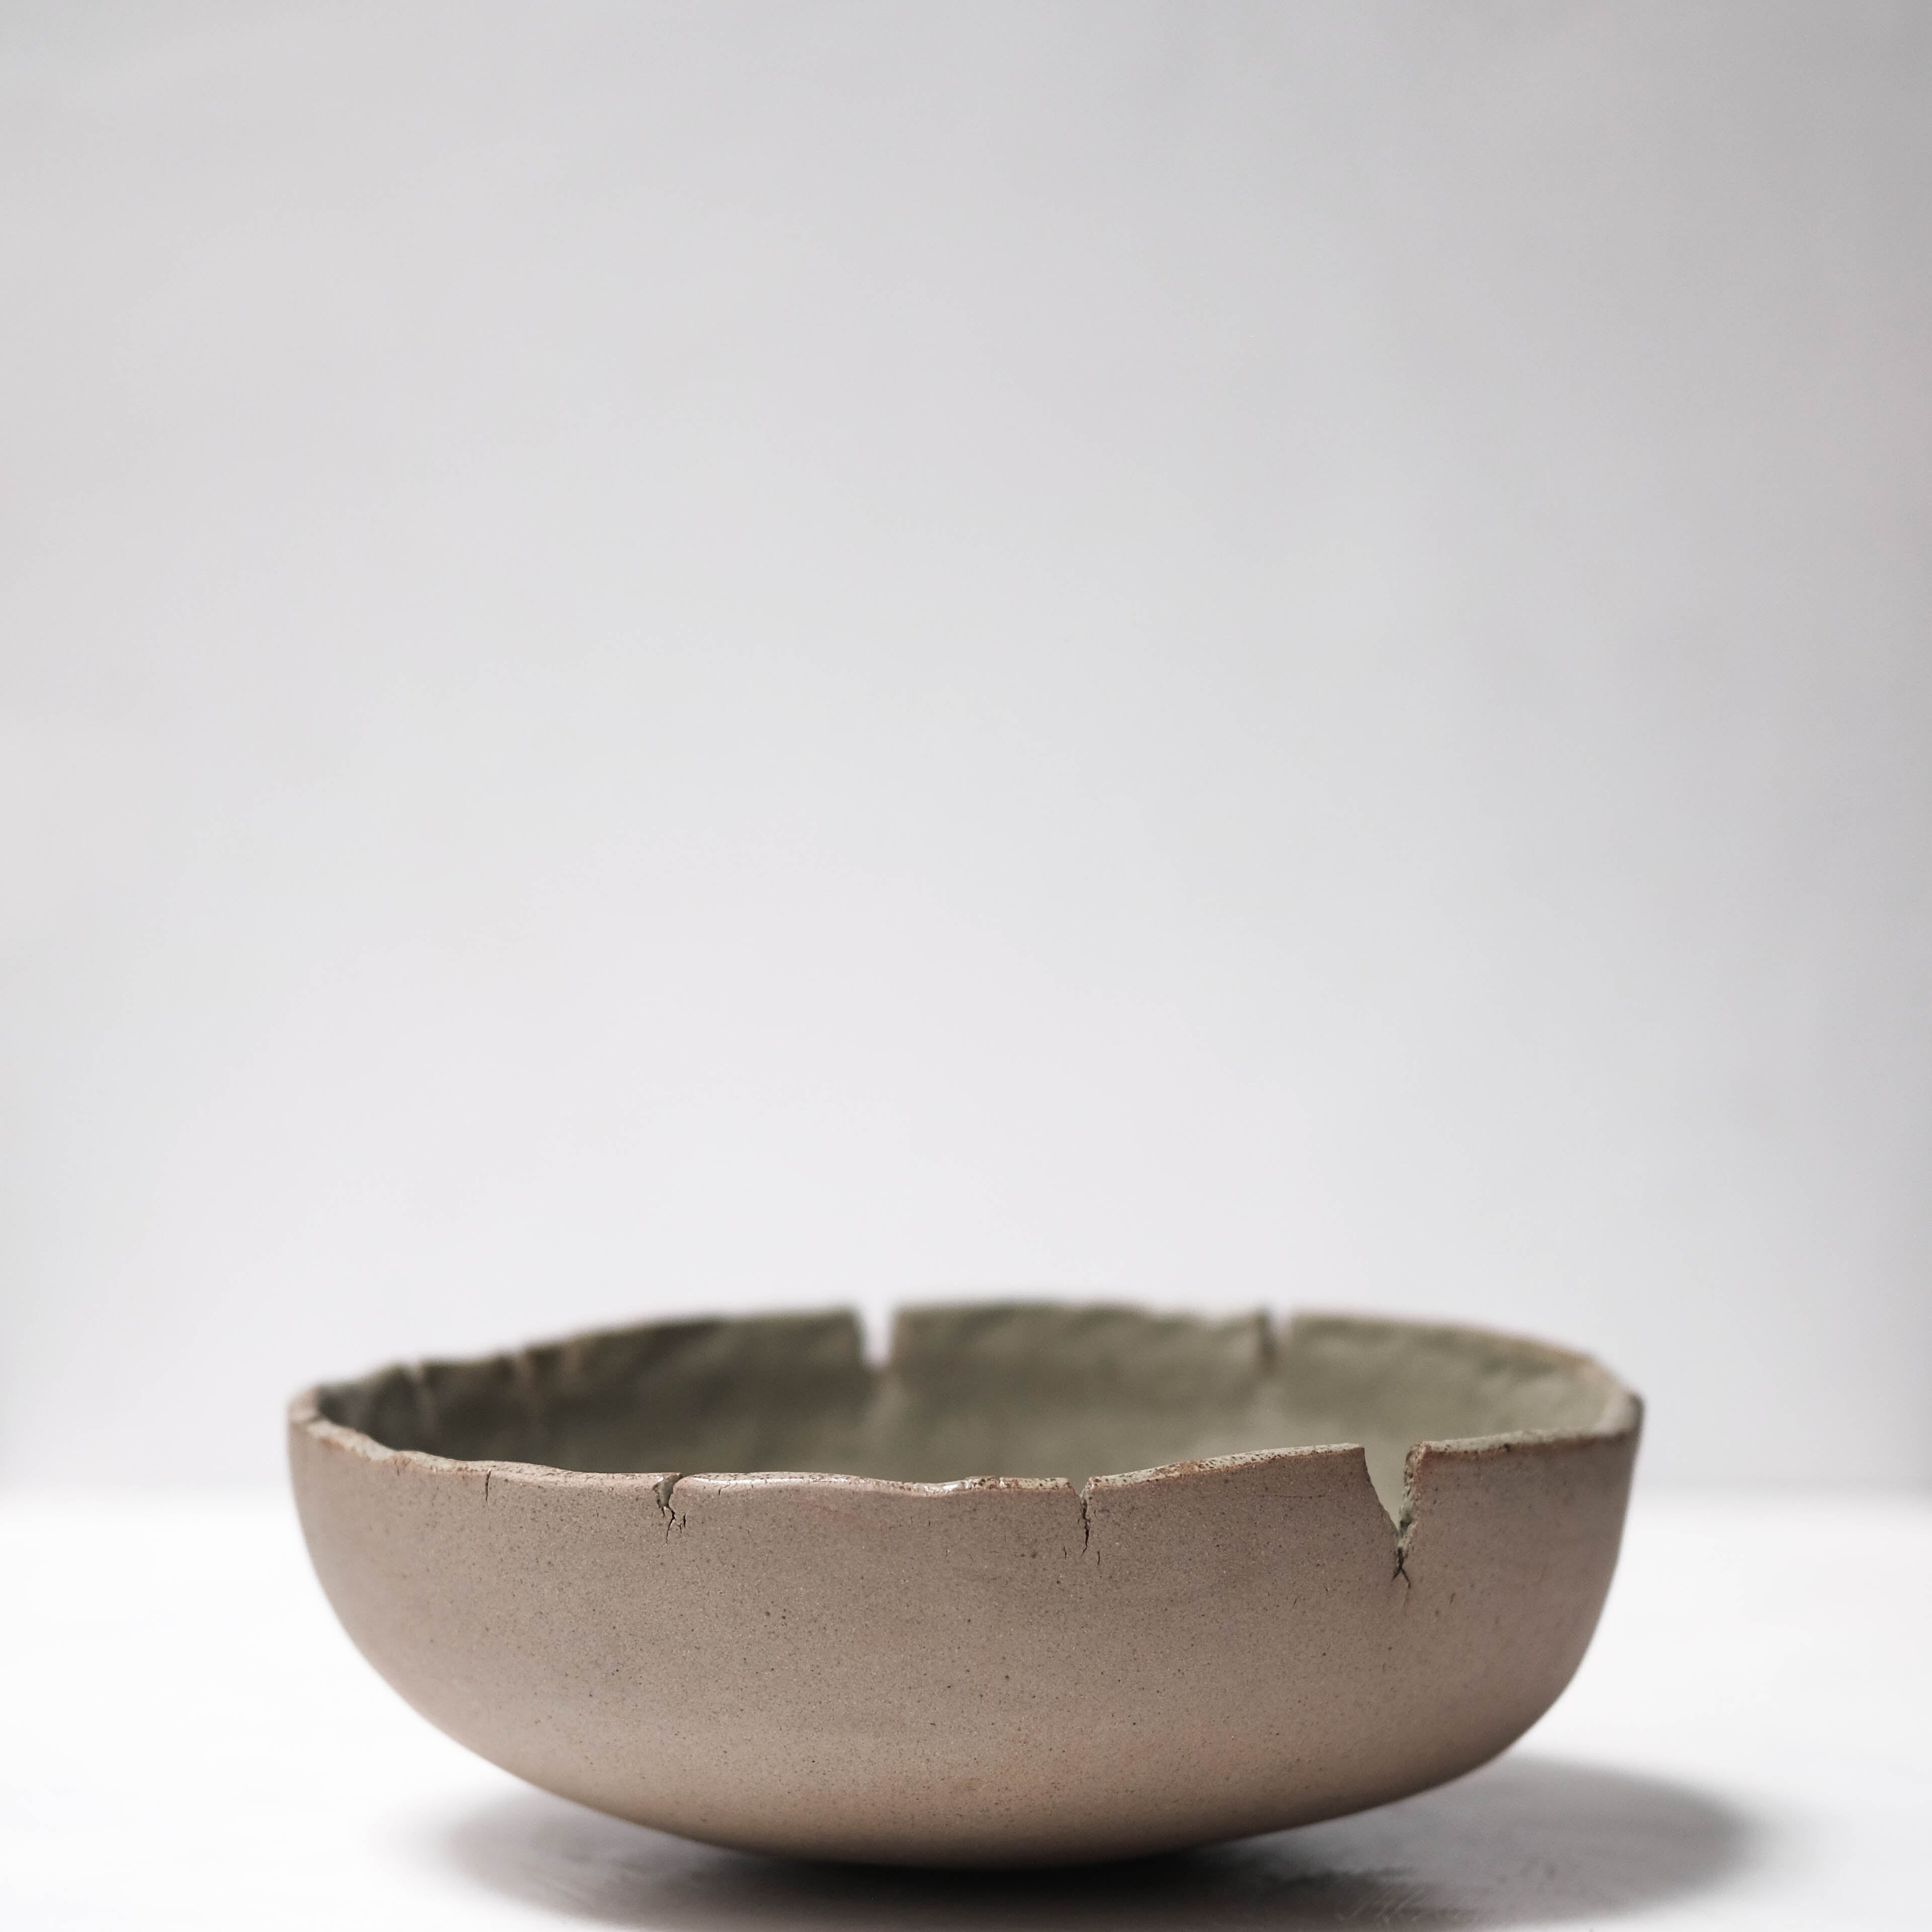 Haigusuri (灰釉) Bowl #ASH42